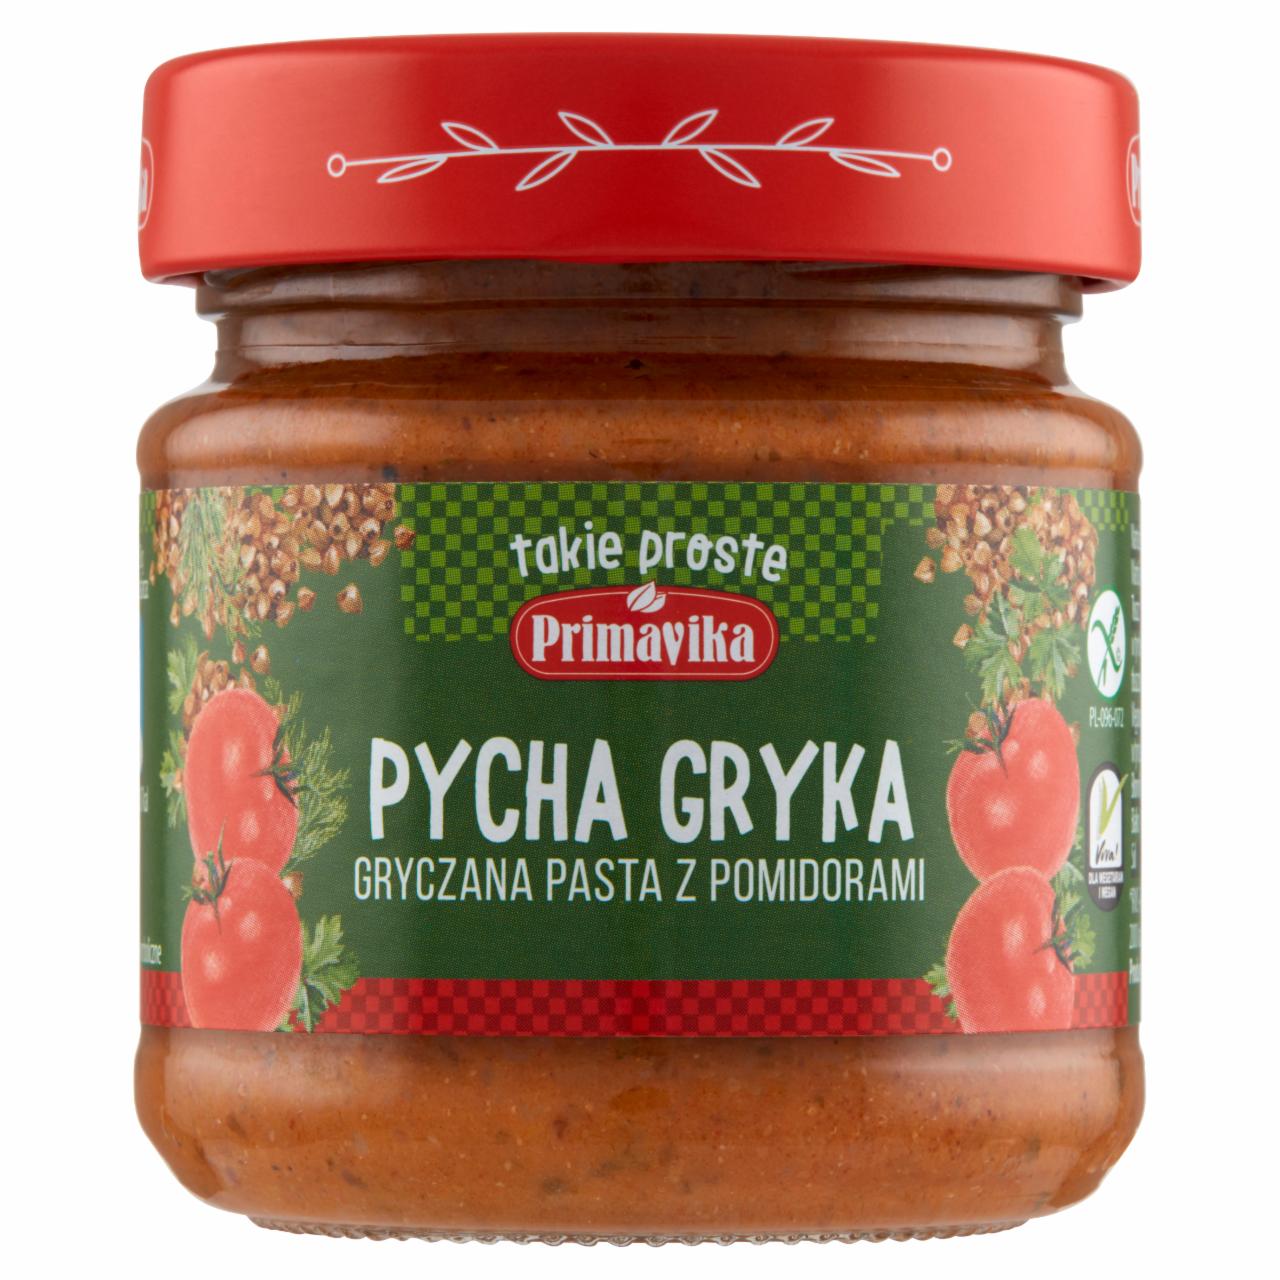 Zdjęcia - Primavika Pycha Gryka Gryczana pasta z pomidorami 160 g